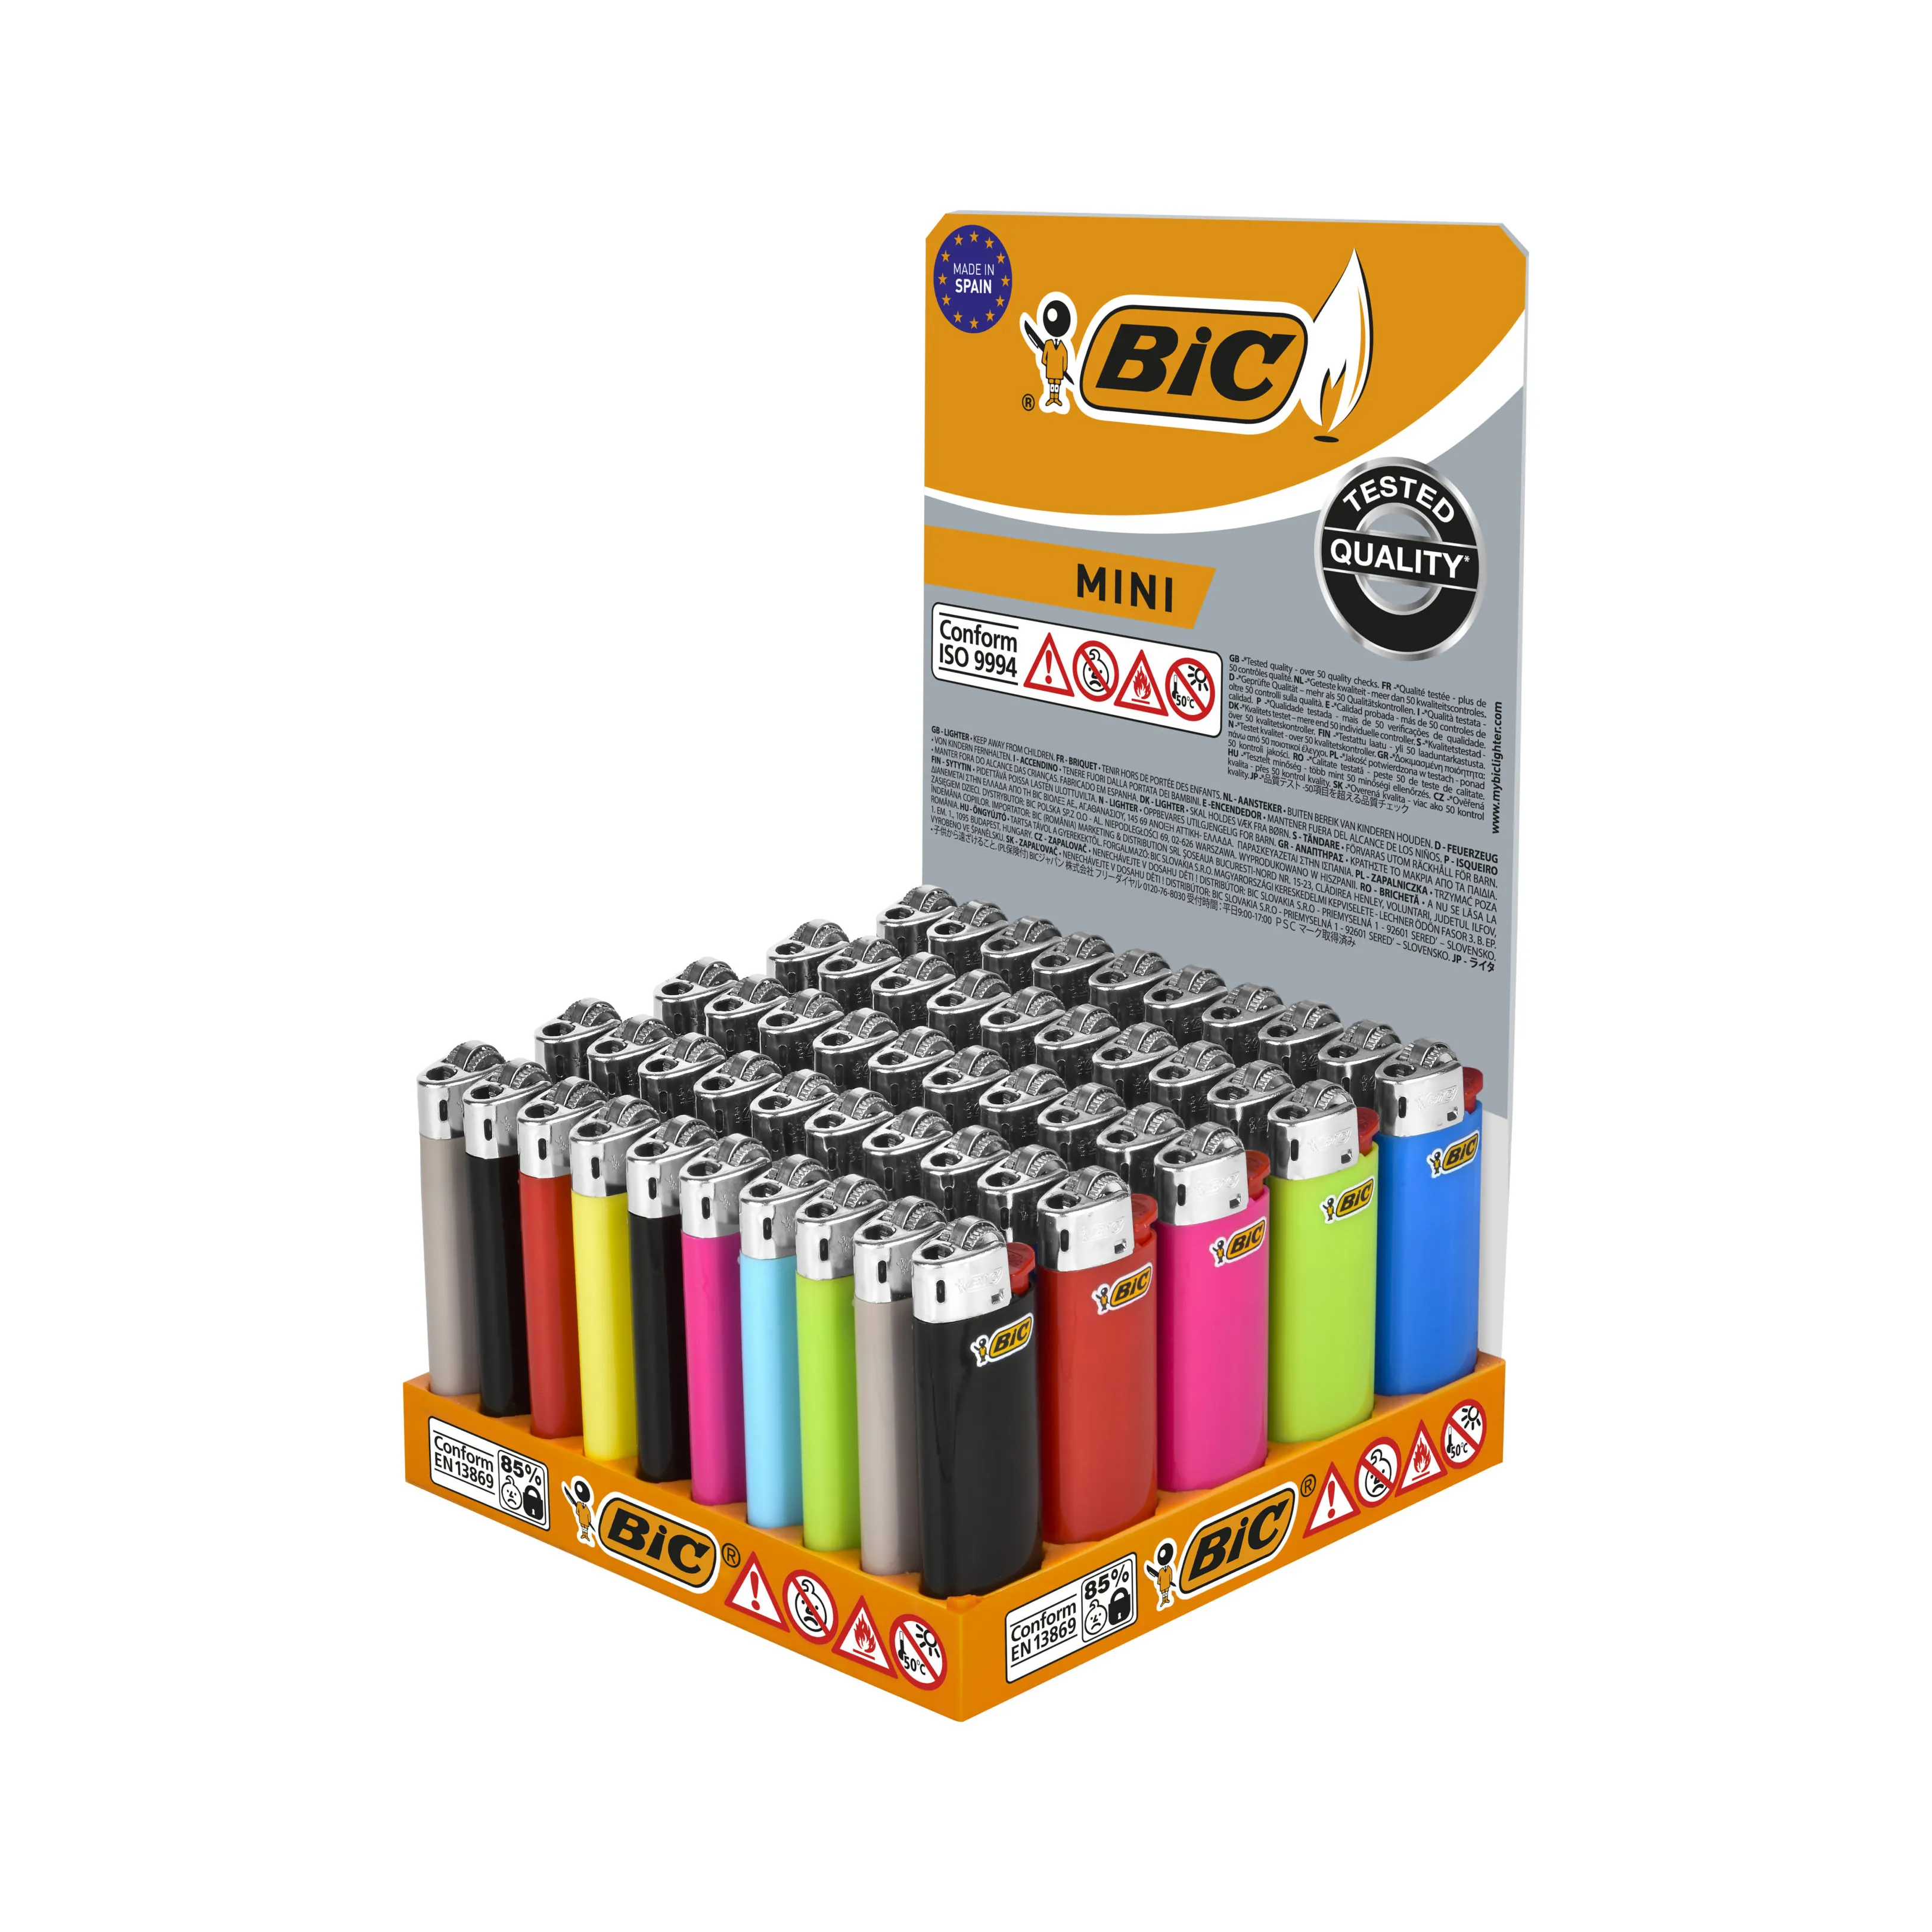 Зажигалки Bic с индивидуальным логотипом, дешевые зажигалки Bic для продажи